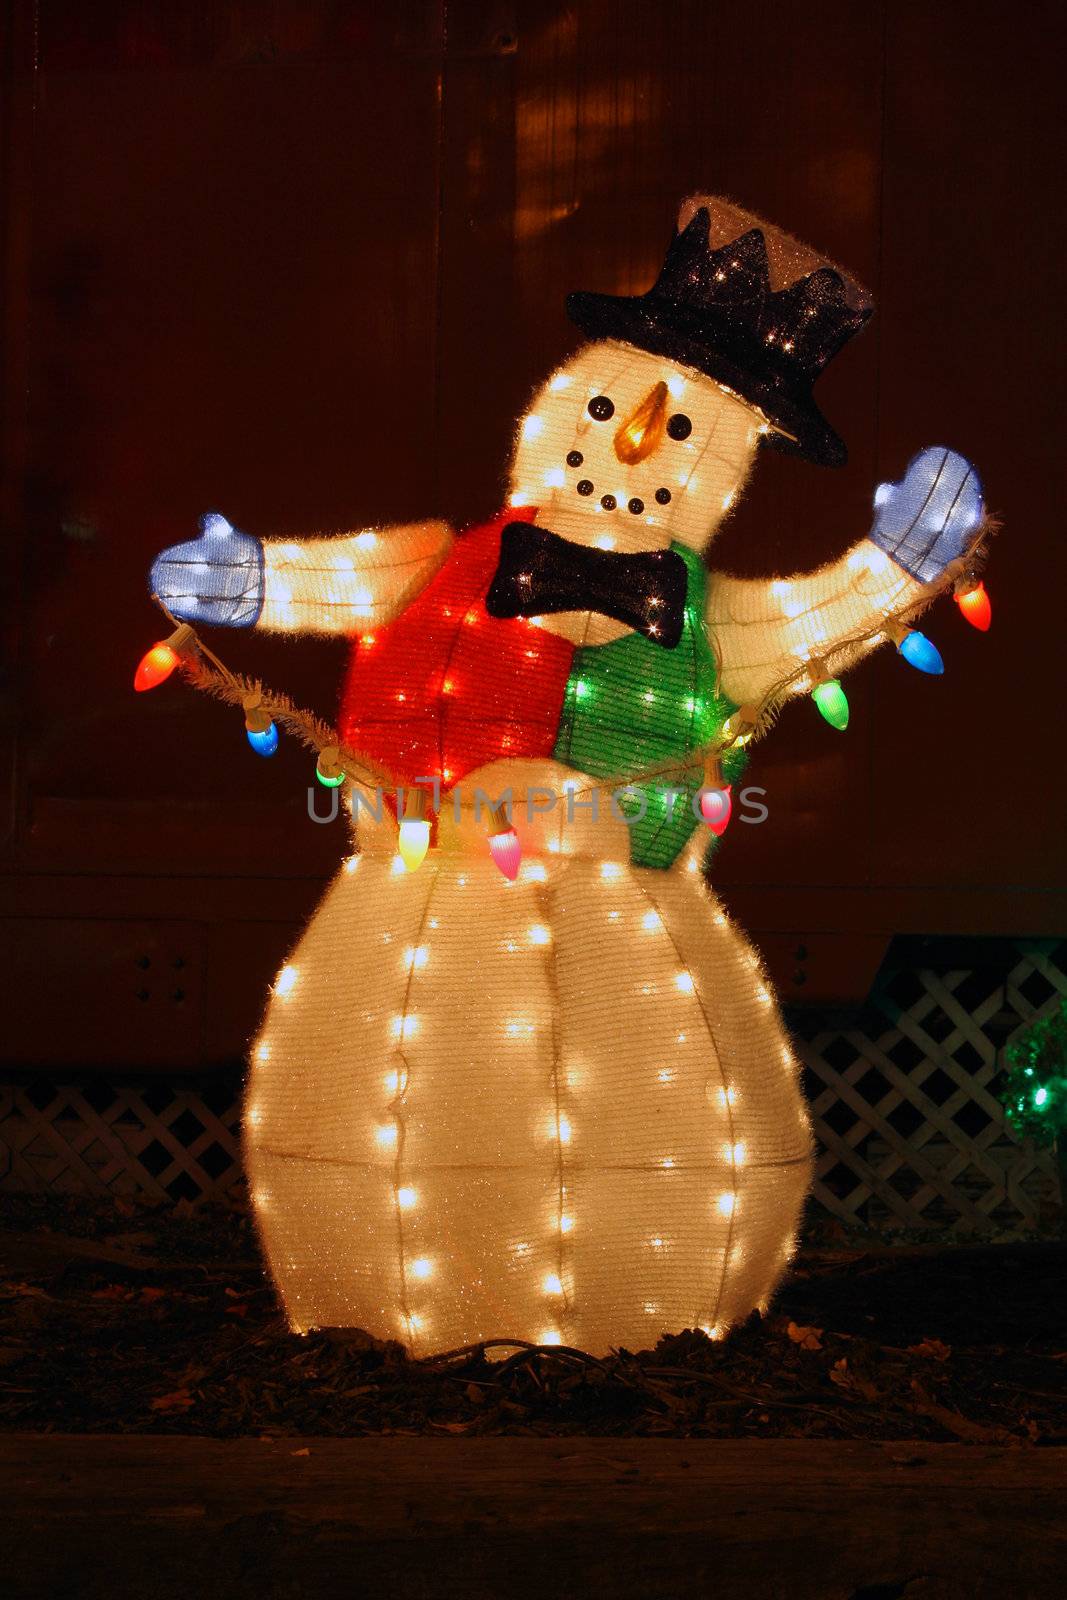 illuminated snowman